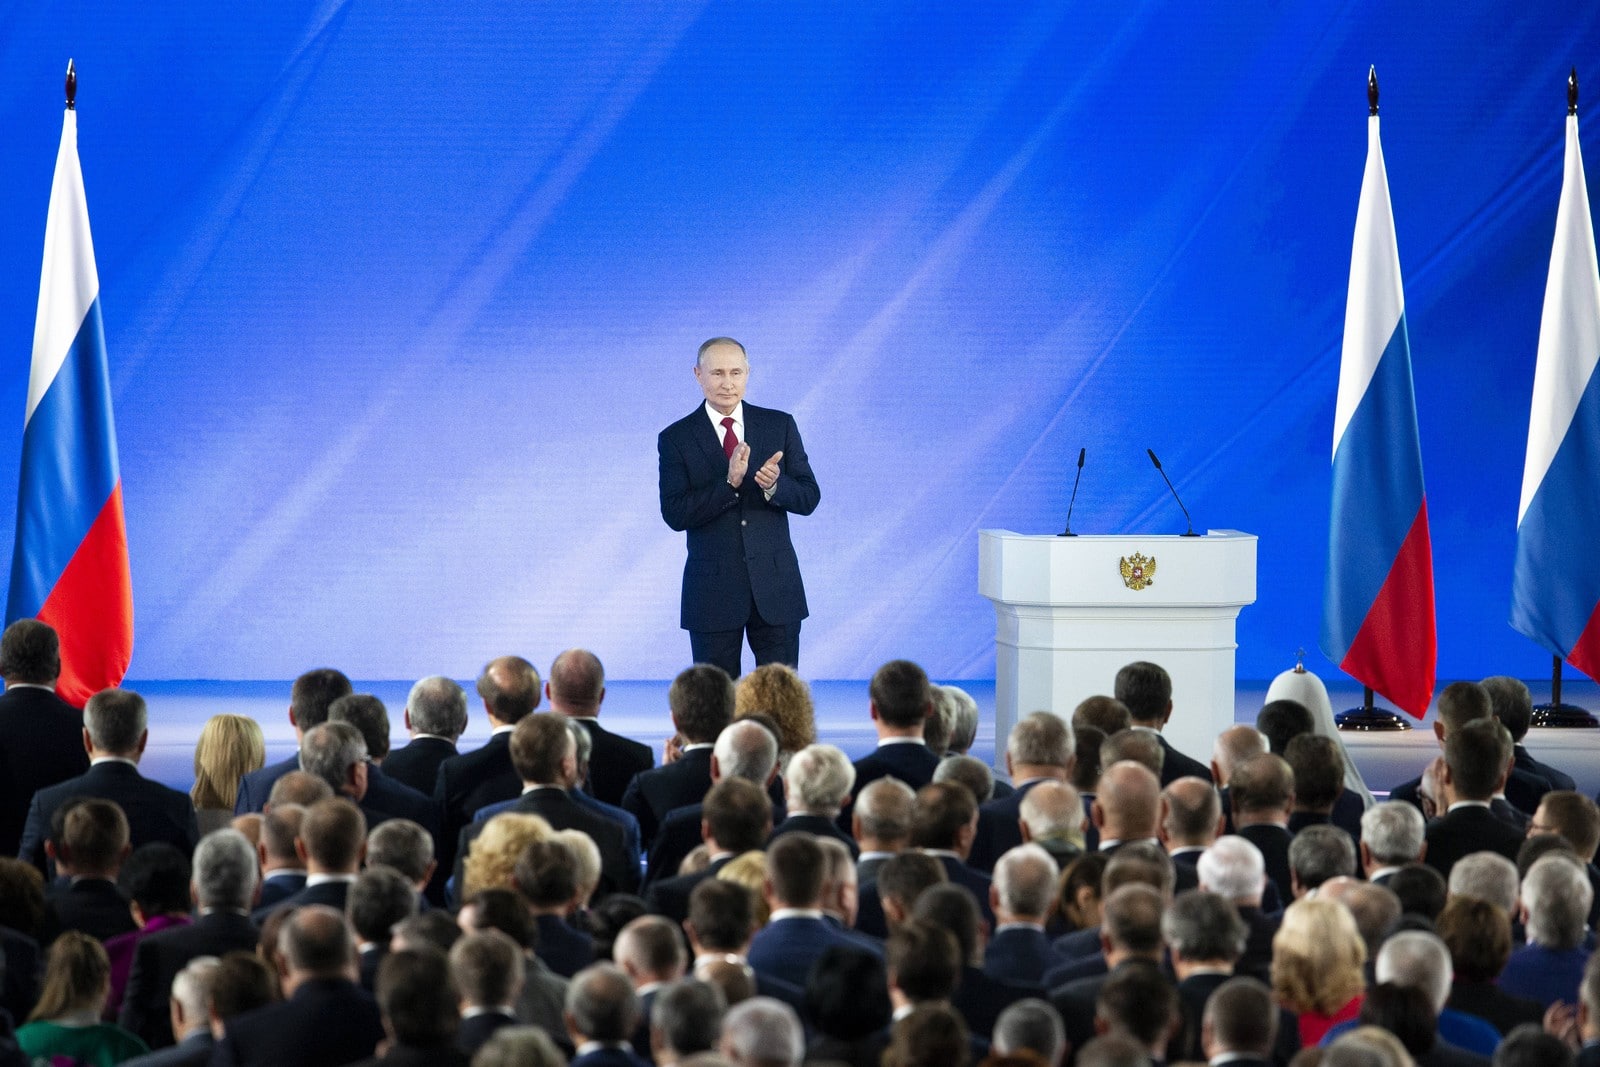 Applaudissements lors du discours de Vladimir Poutine devant le Conseil d'État le 15 janvier 2020 : un peuple derrière son président,
Auteurs  : Alexander Zemlianichenko/AP/SIPA,
Numéro de reportage  : AP22418673_000002.